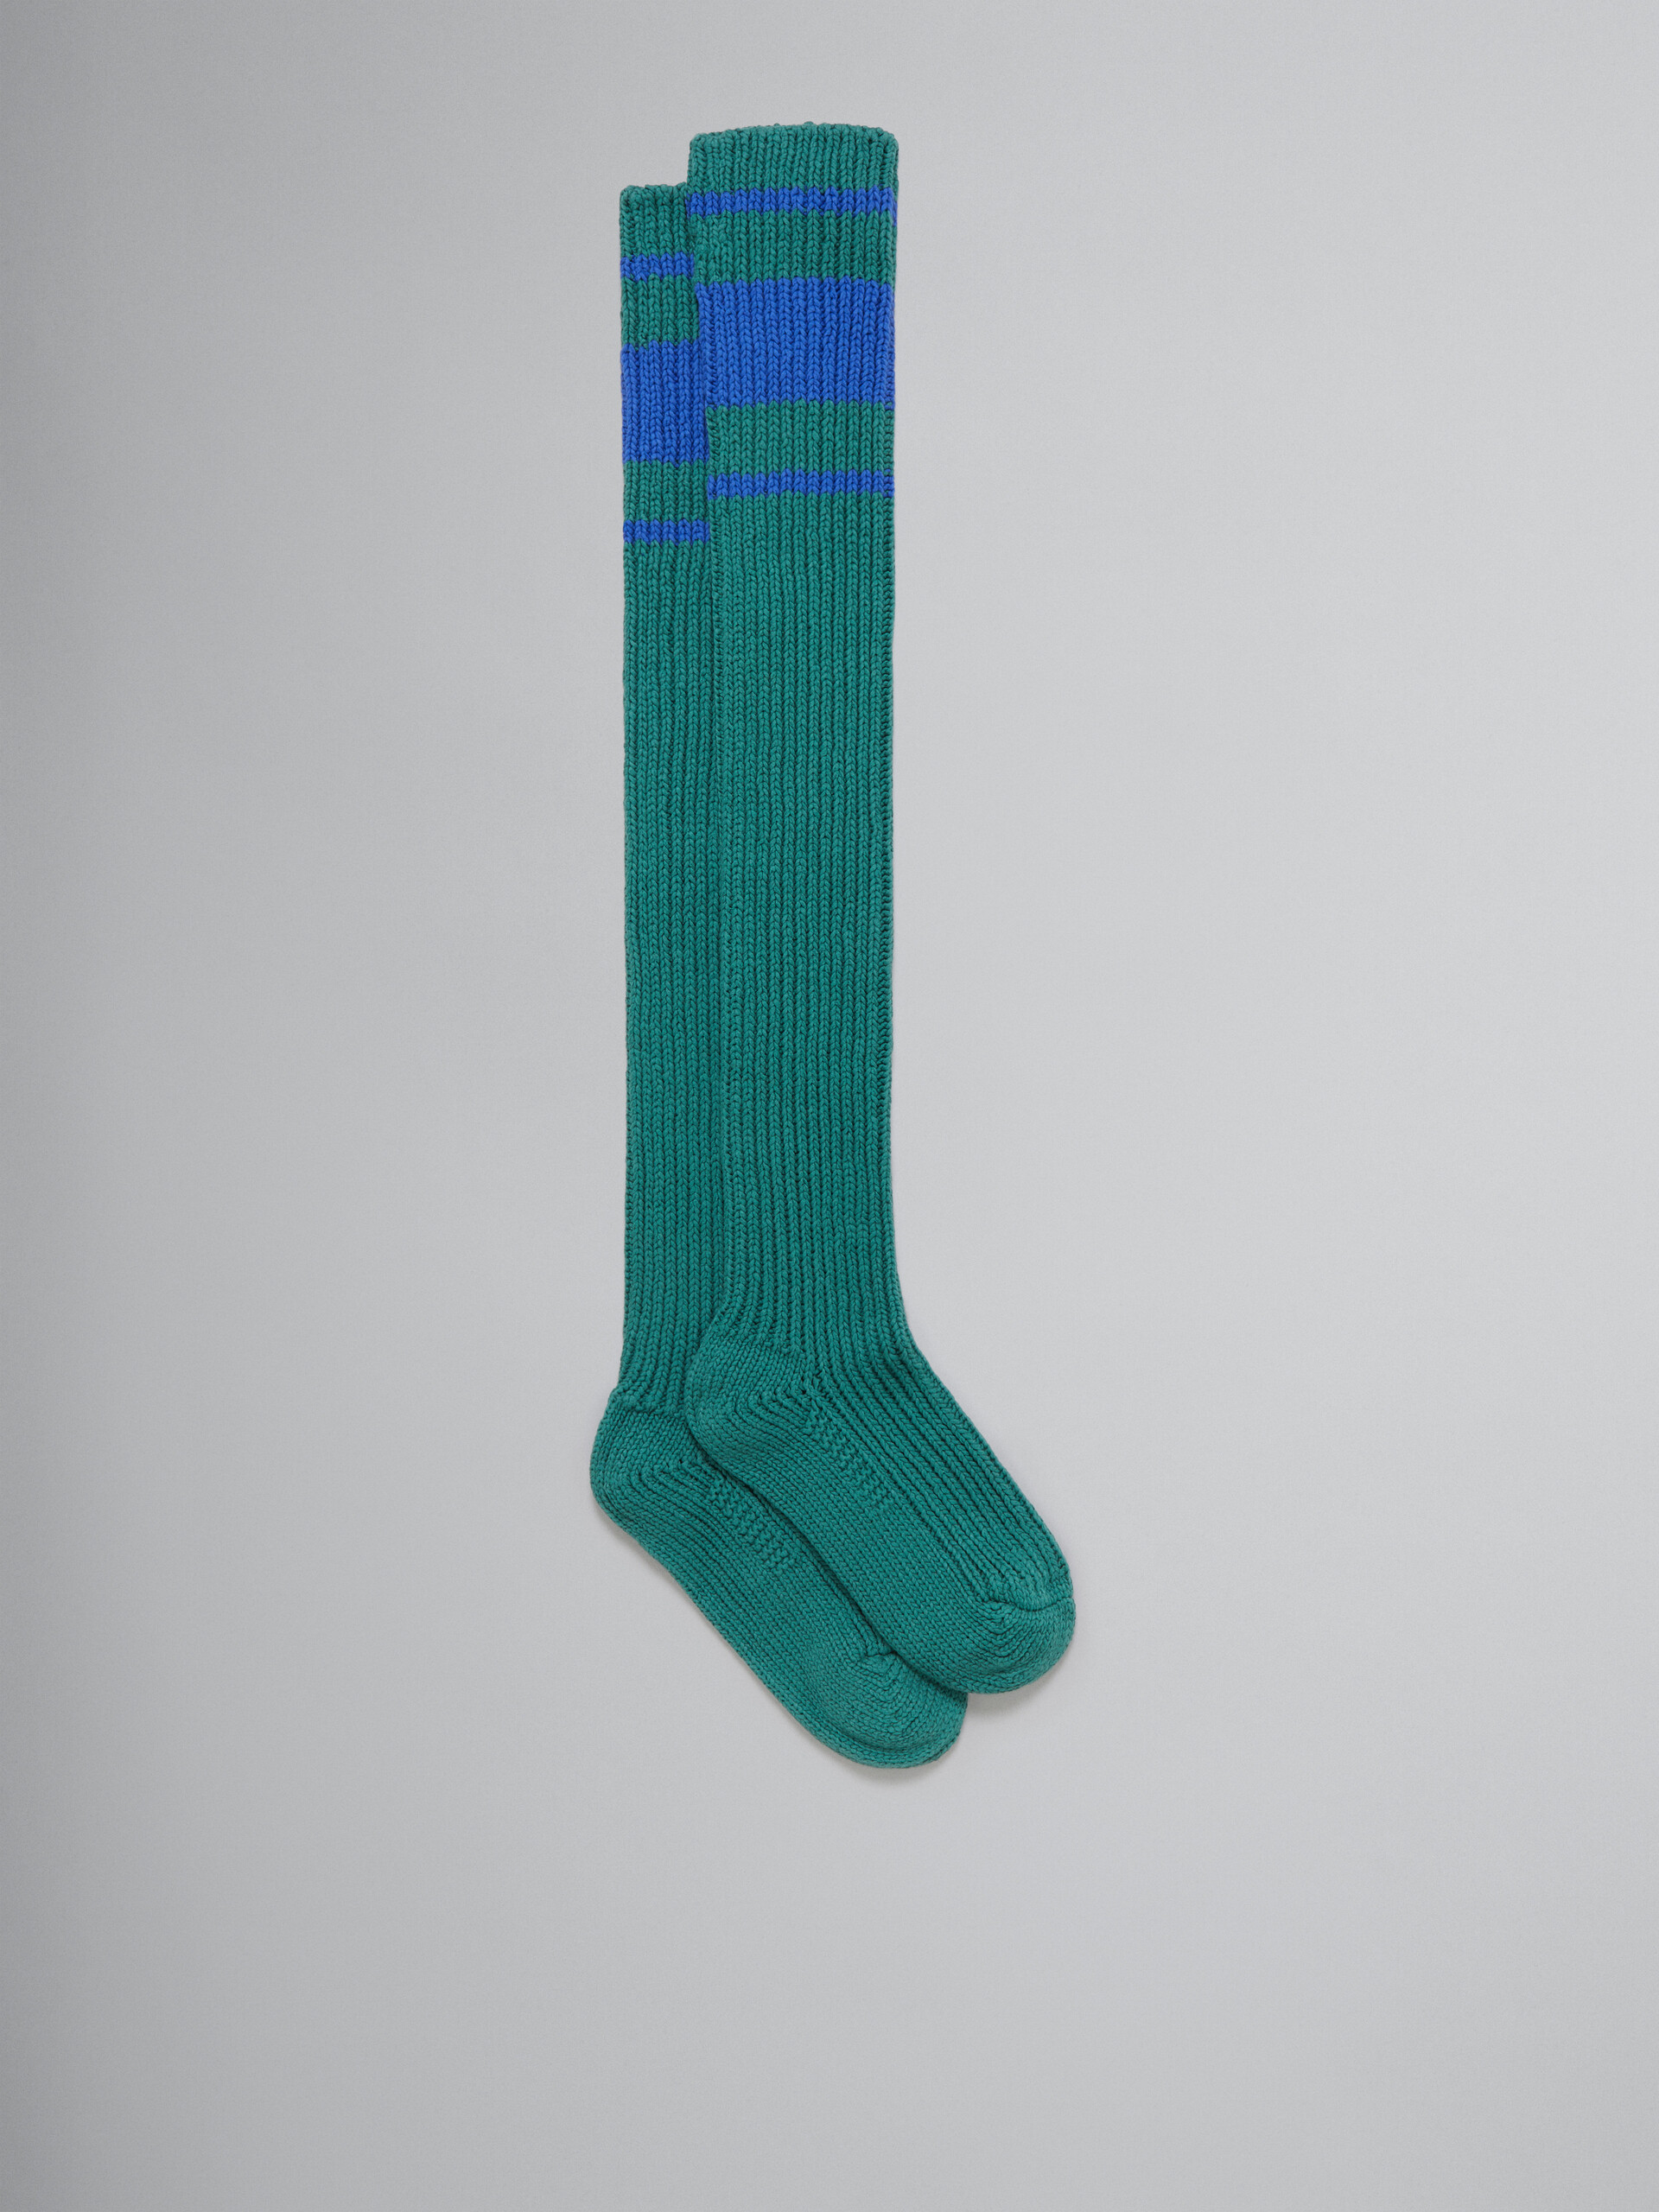 Green cotton knee-length socks - Socks - Image 1